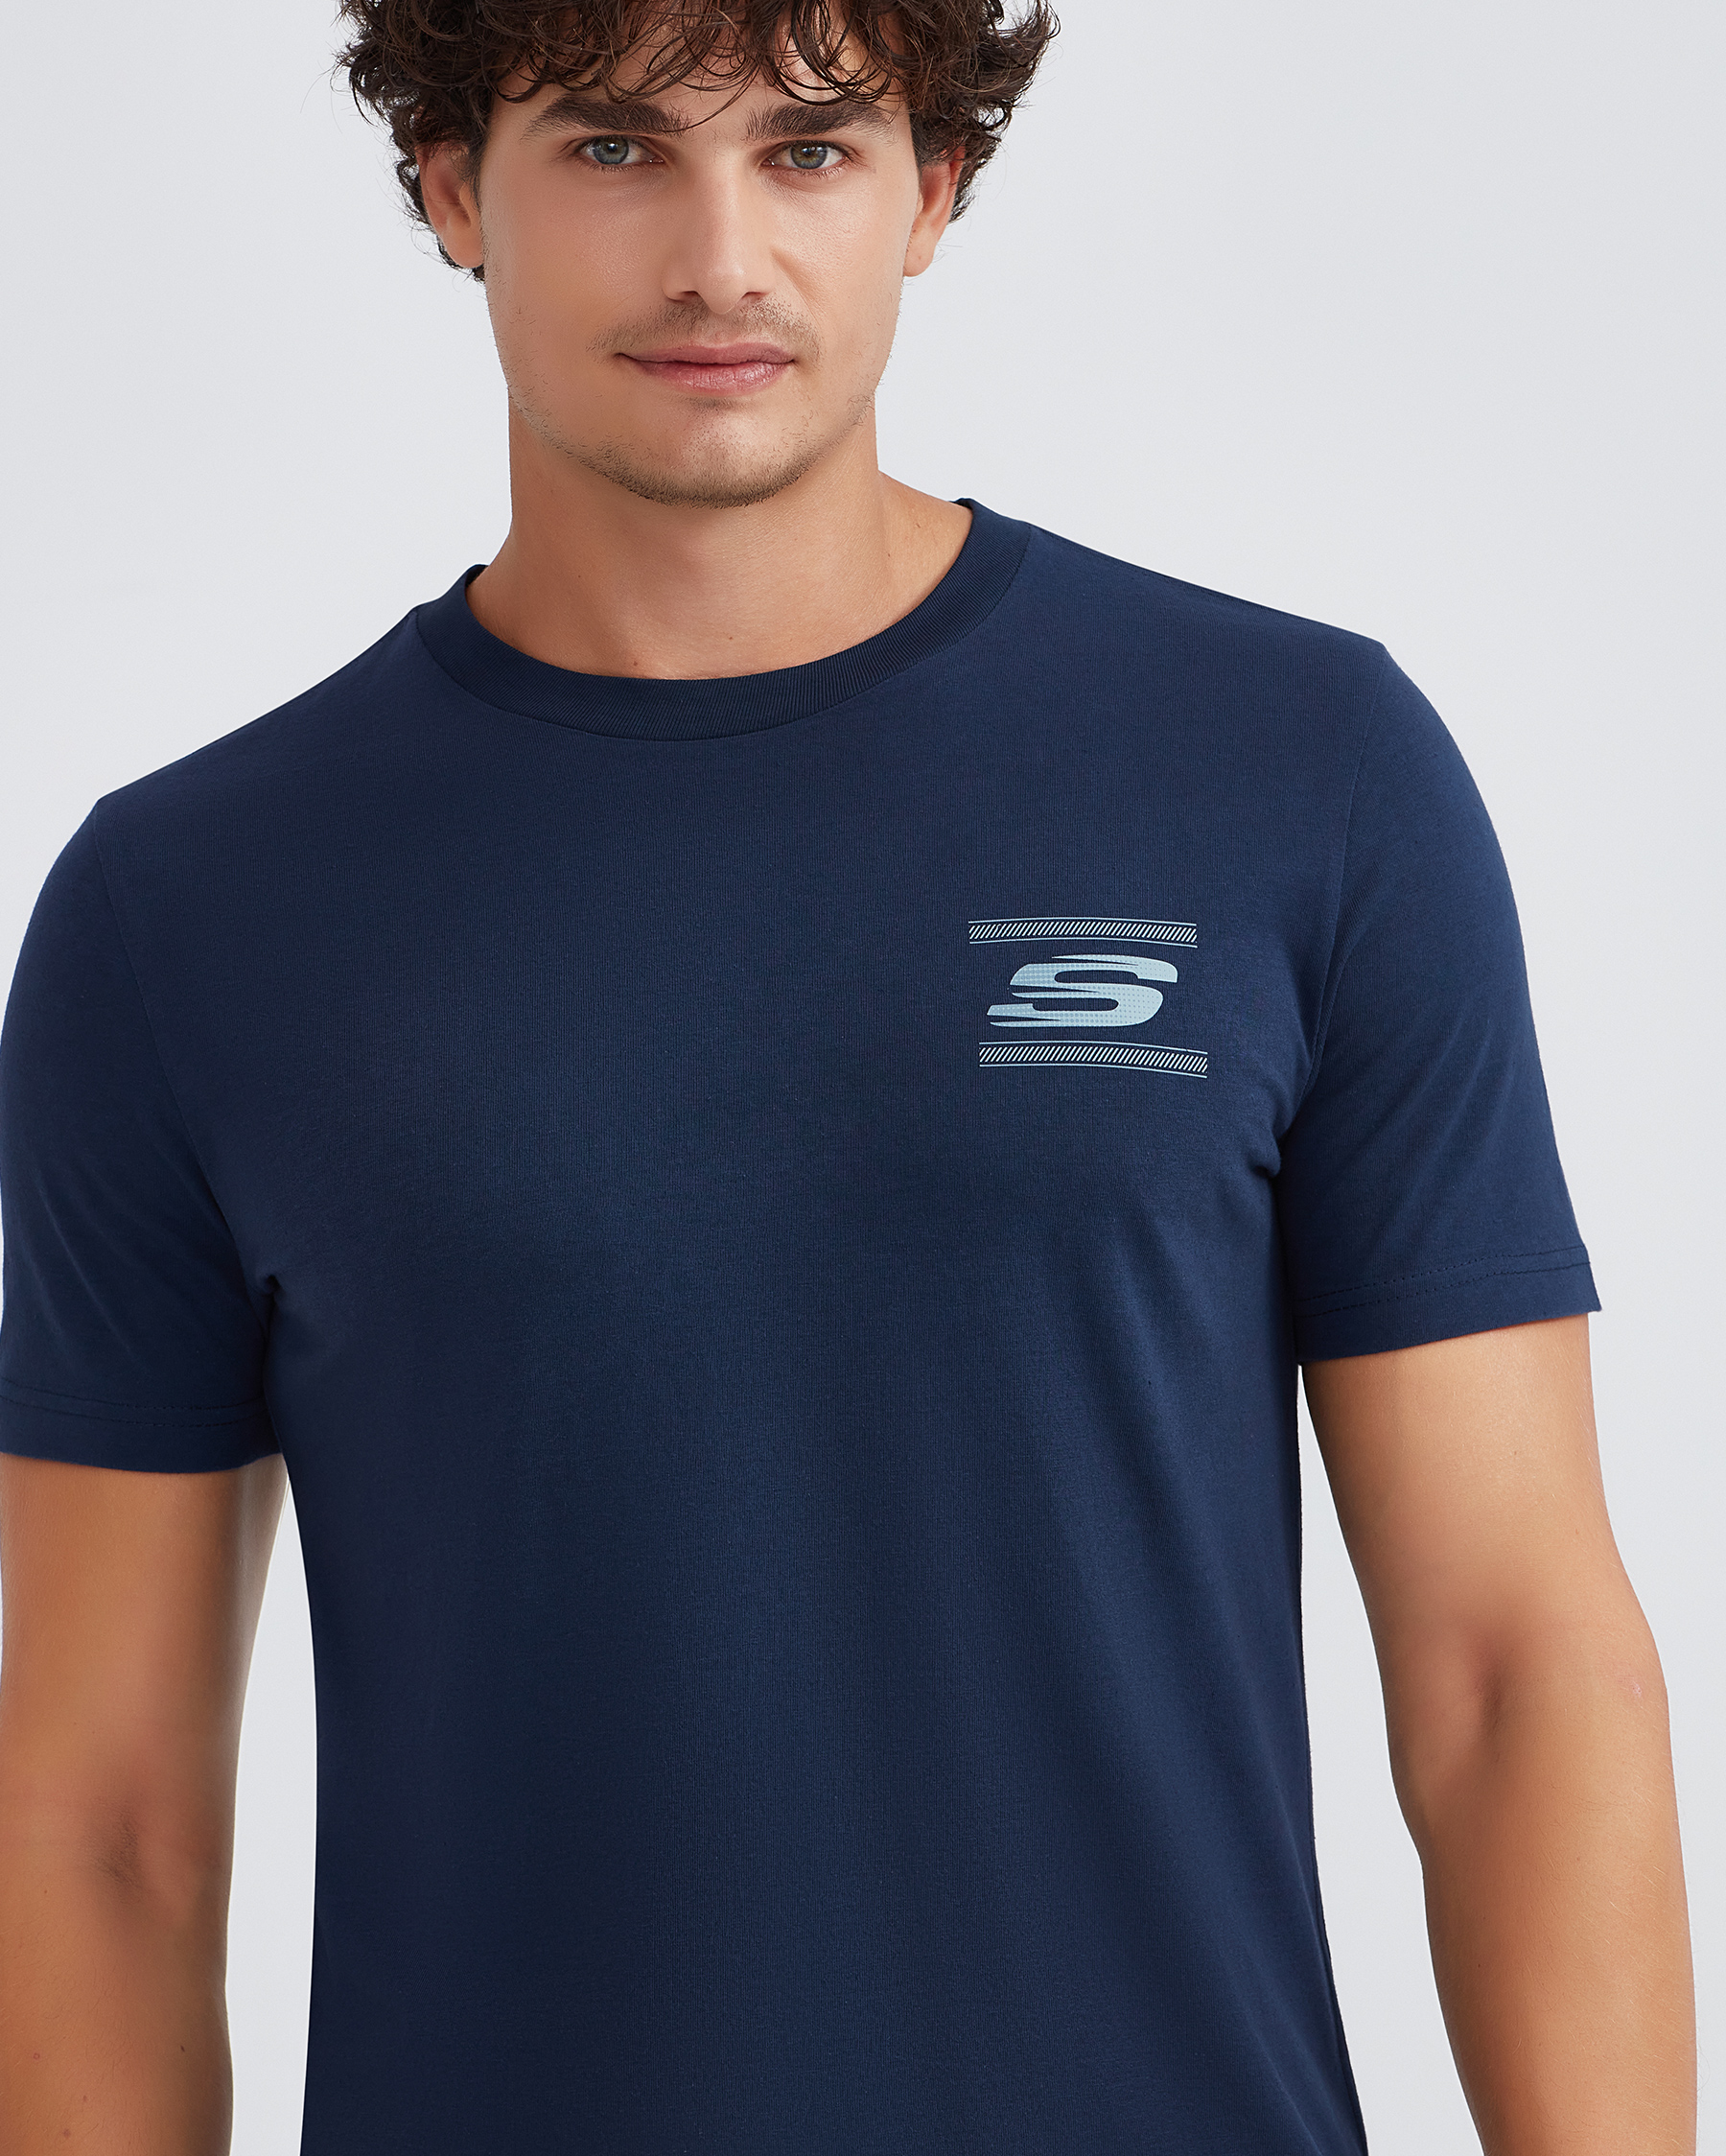 M T-shirt Graphic Tshirt Skechers Tee Crew Neck S232339-410 Lacivert Erkek